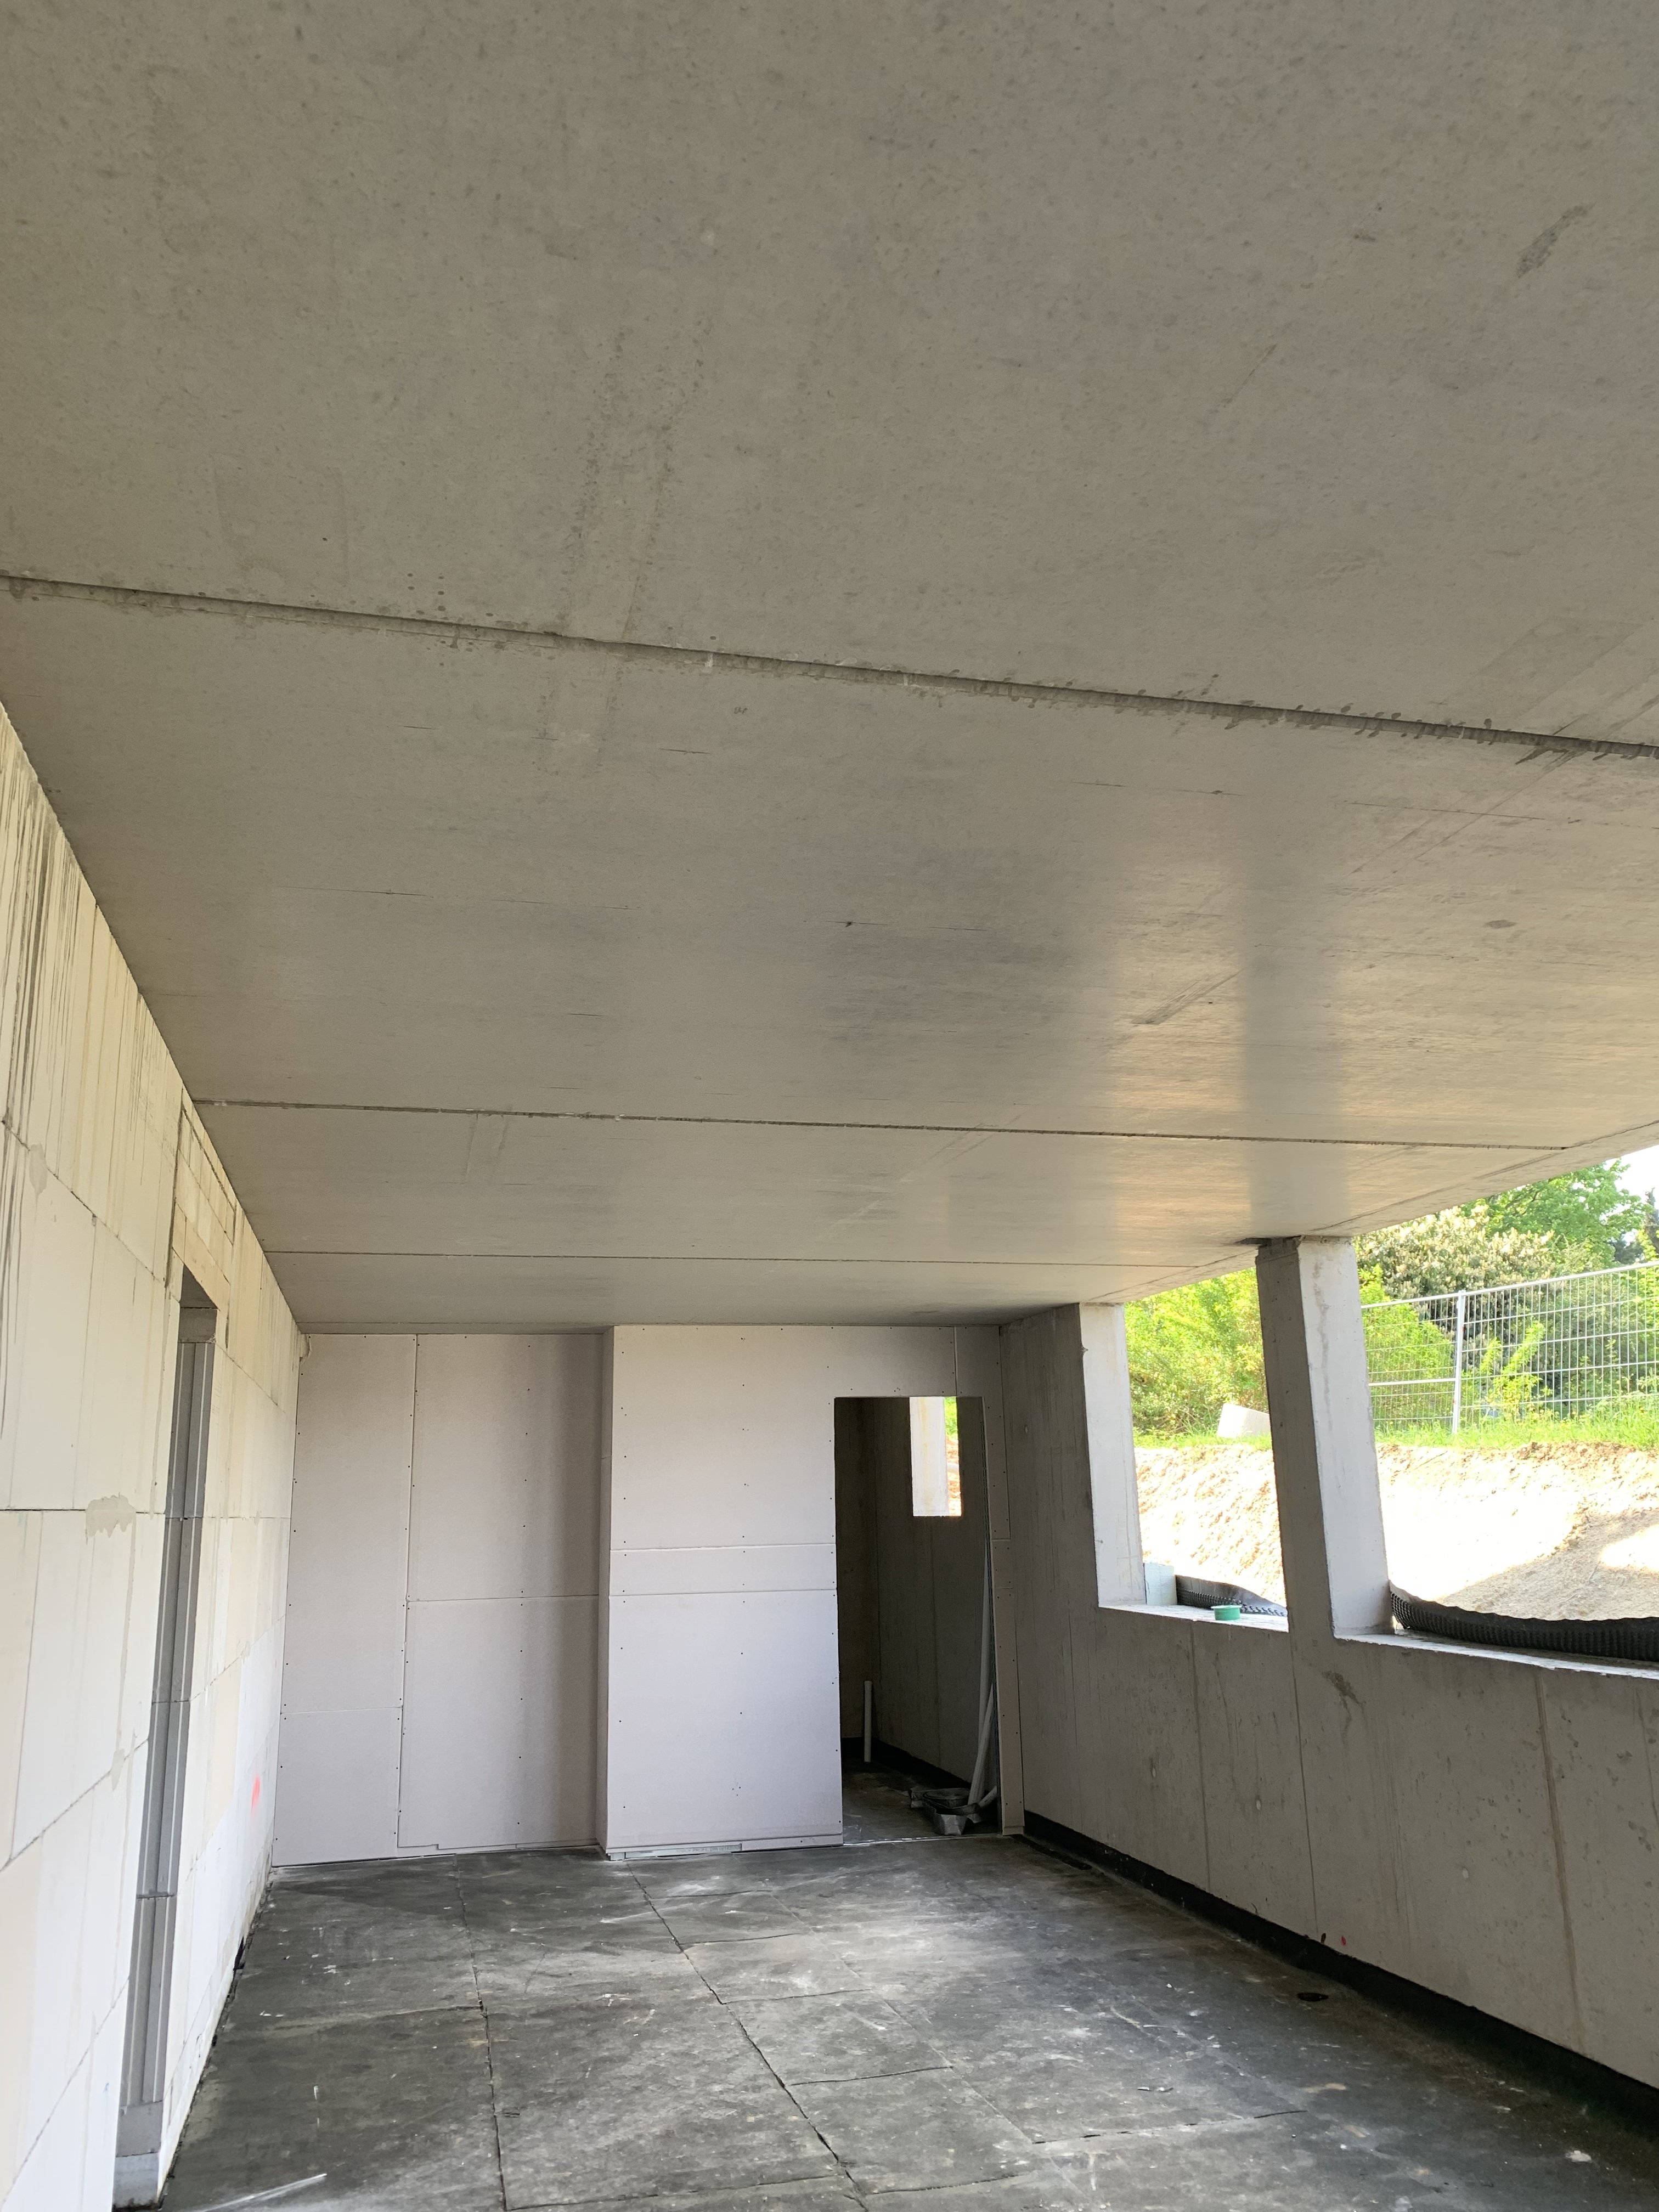 beton-filigrandecken-in-kellergeschoss-unverputzt-lassen-575279-1.jpeg